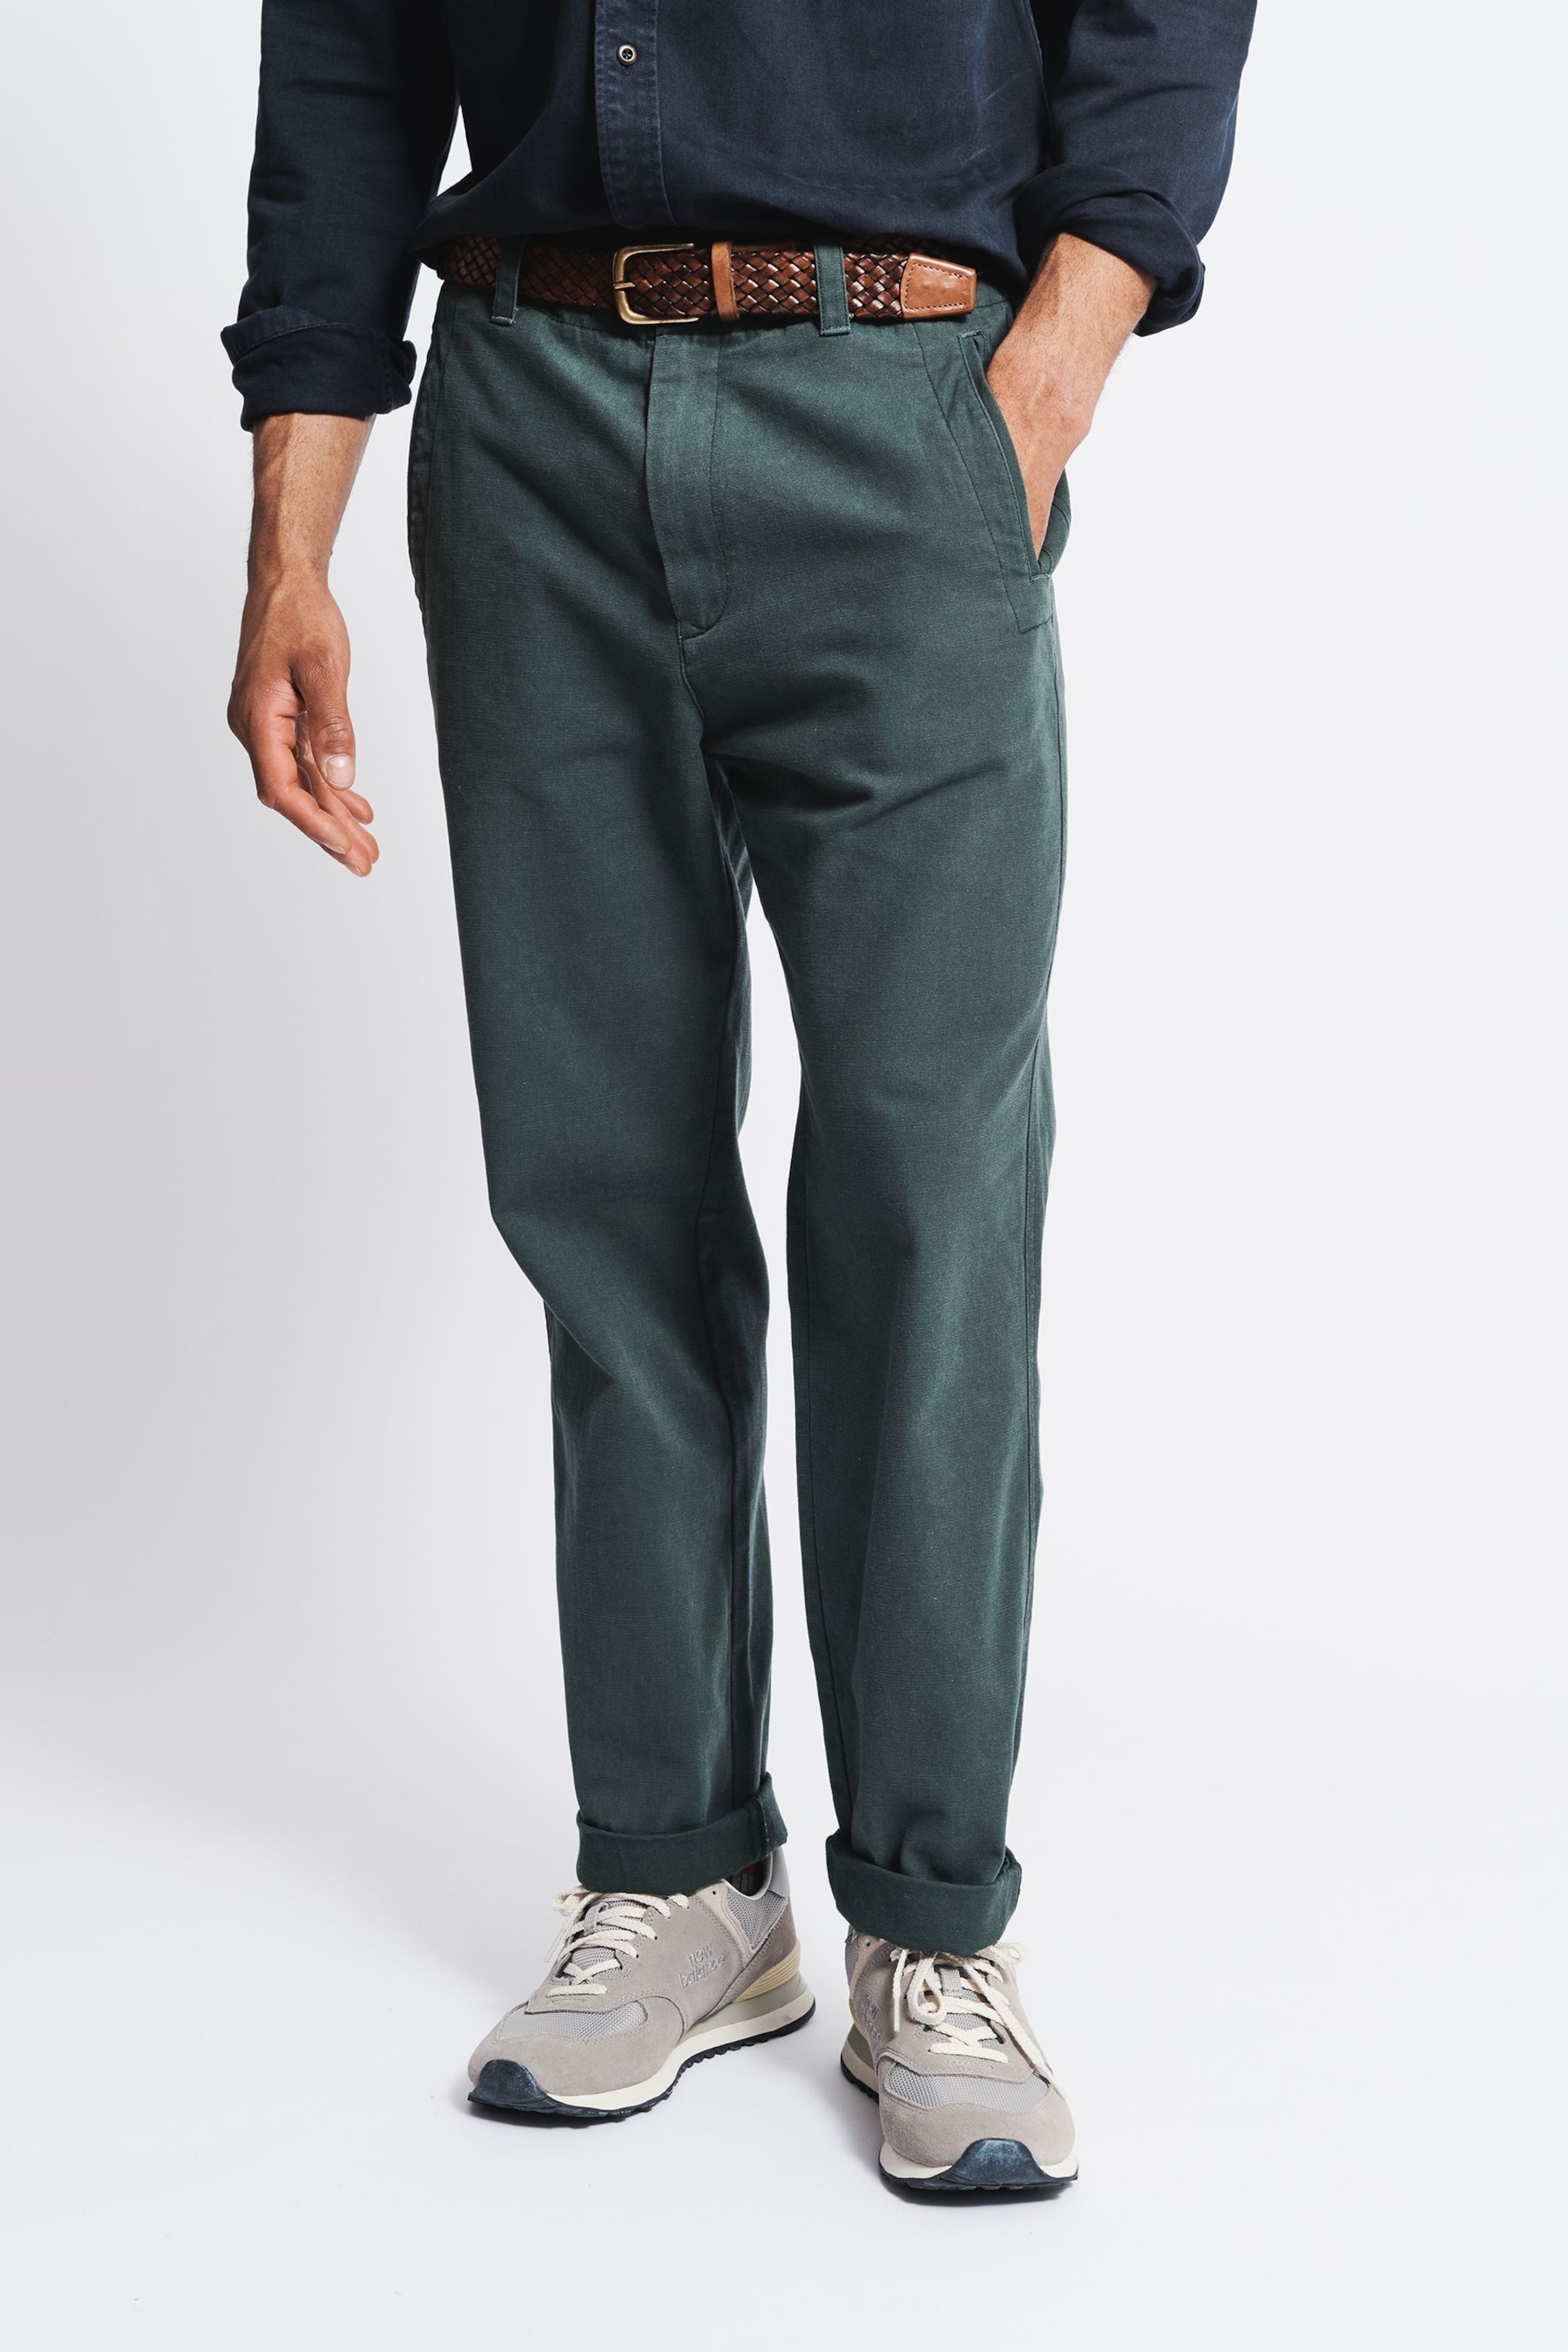 Aubin Green Nettleton Trousers - Image 1 of 6